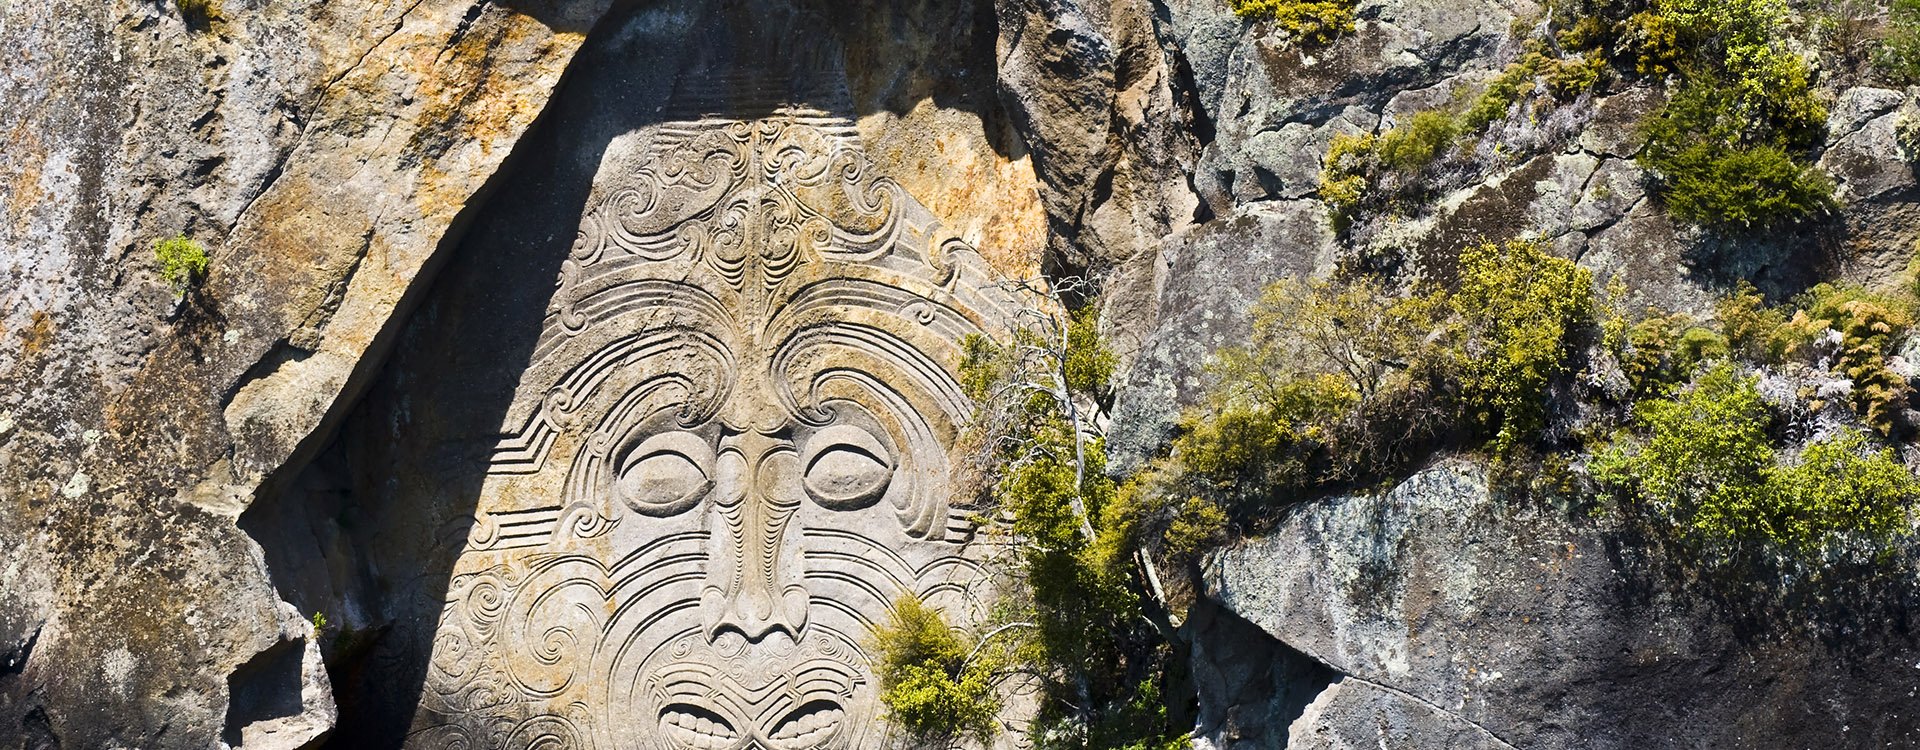 Petroglyph, Lake Taupo, Rotorua, New Zealand